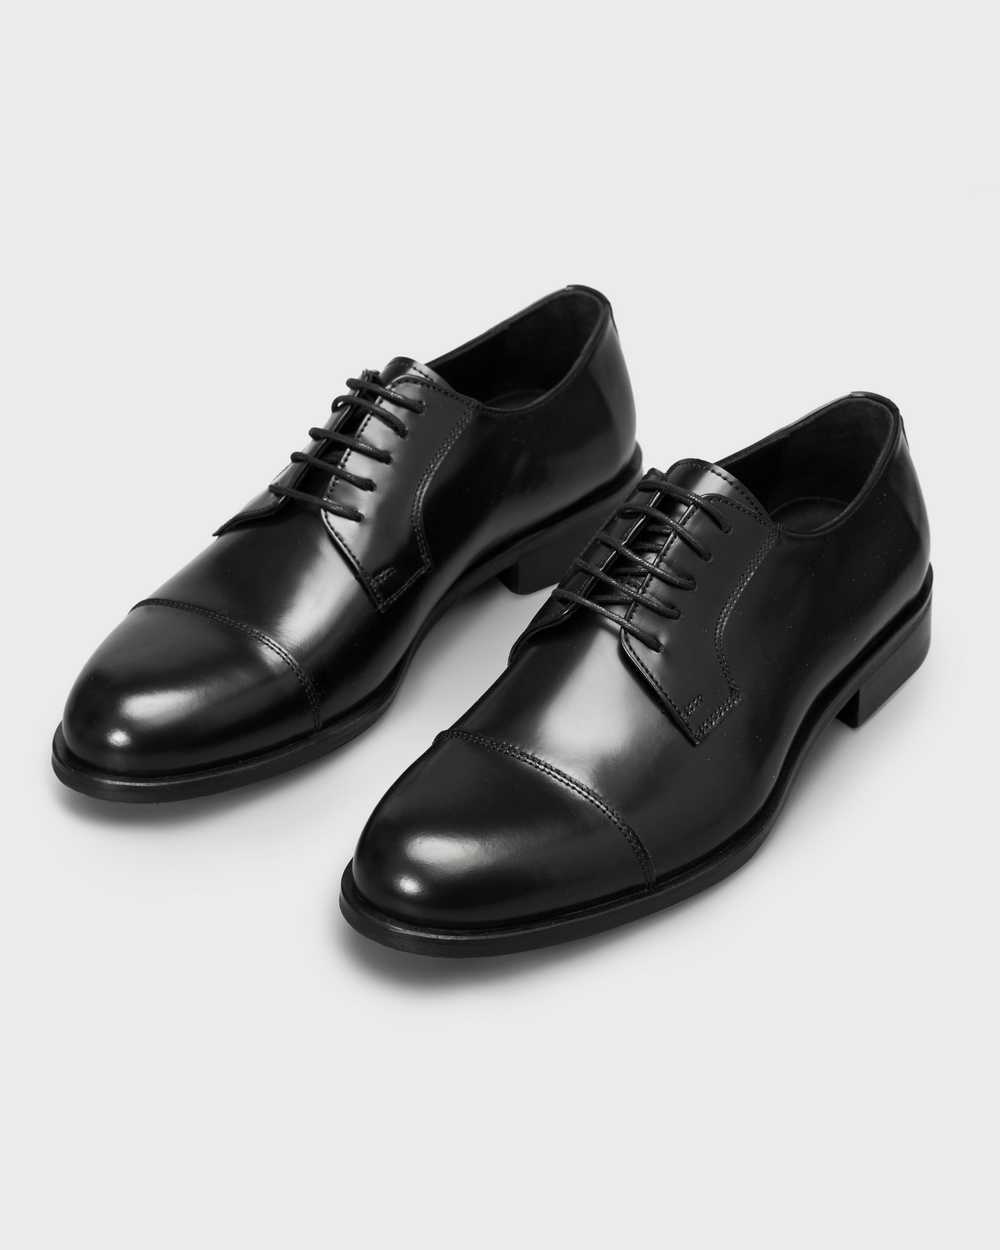 Туфли мужские дерби черные глянцевые, с отрезным мысом и декоративной строчкой